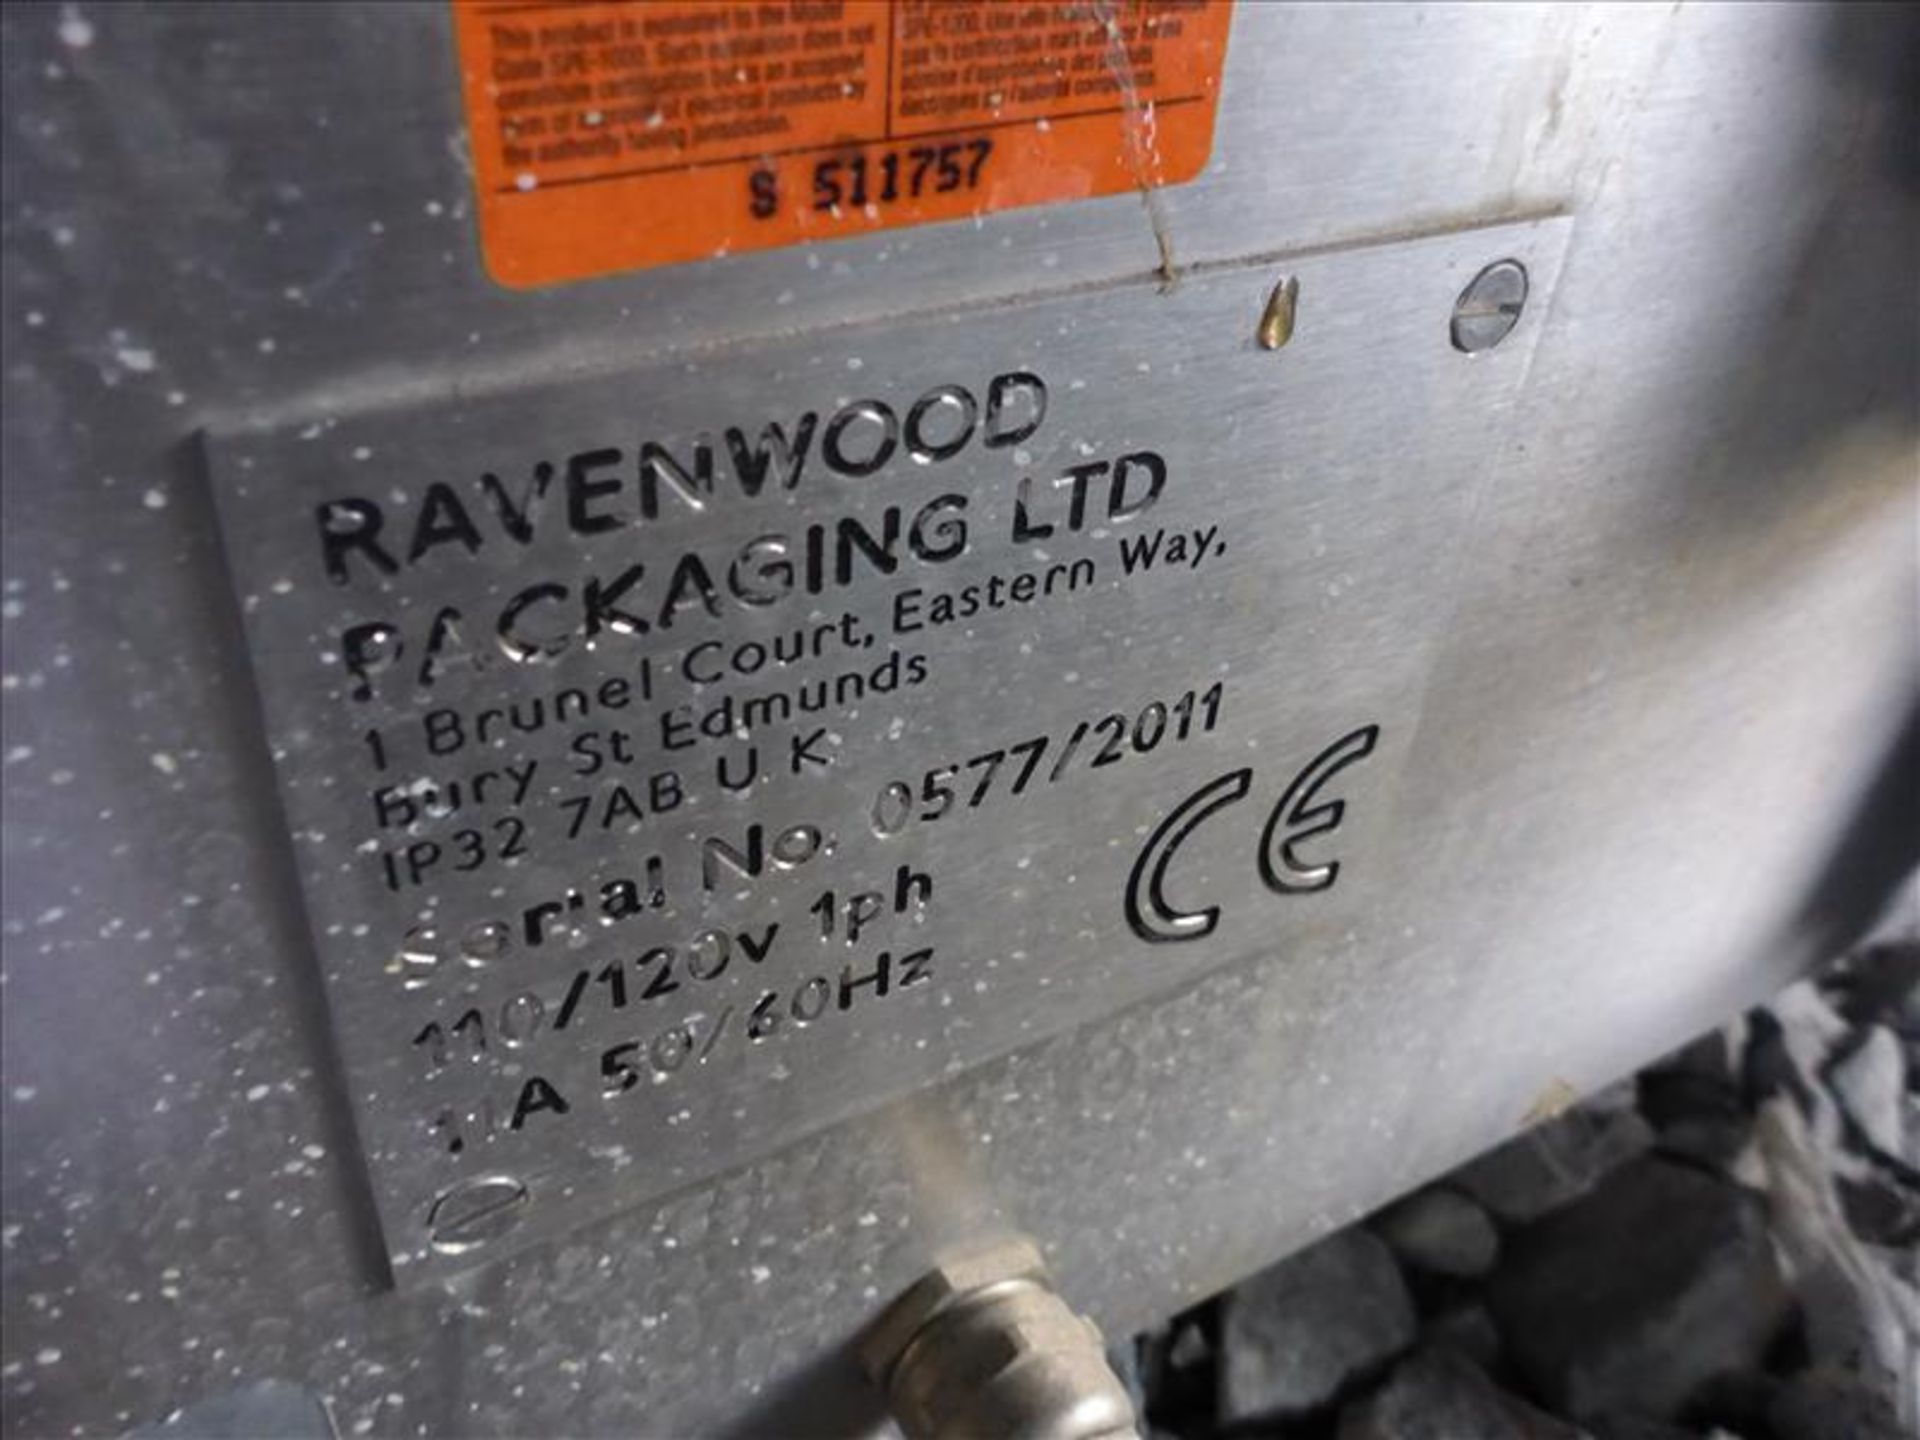 Ravenwood s/s sleever, ser. no. 0577/2011 w/ Nobak controls (May Need Repair) (Tag No. 1004) - Image 3 of 4